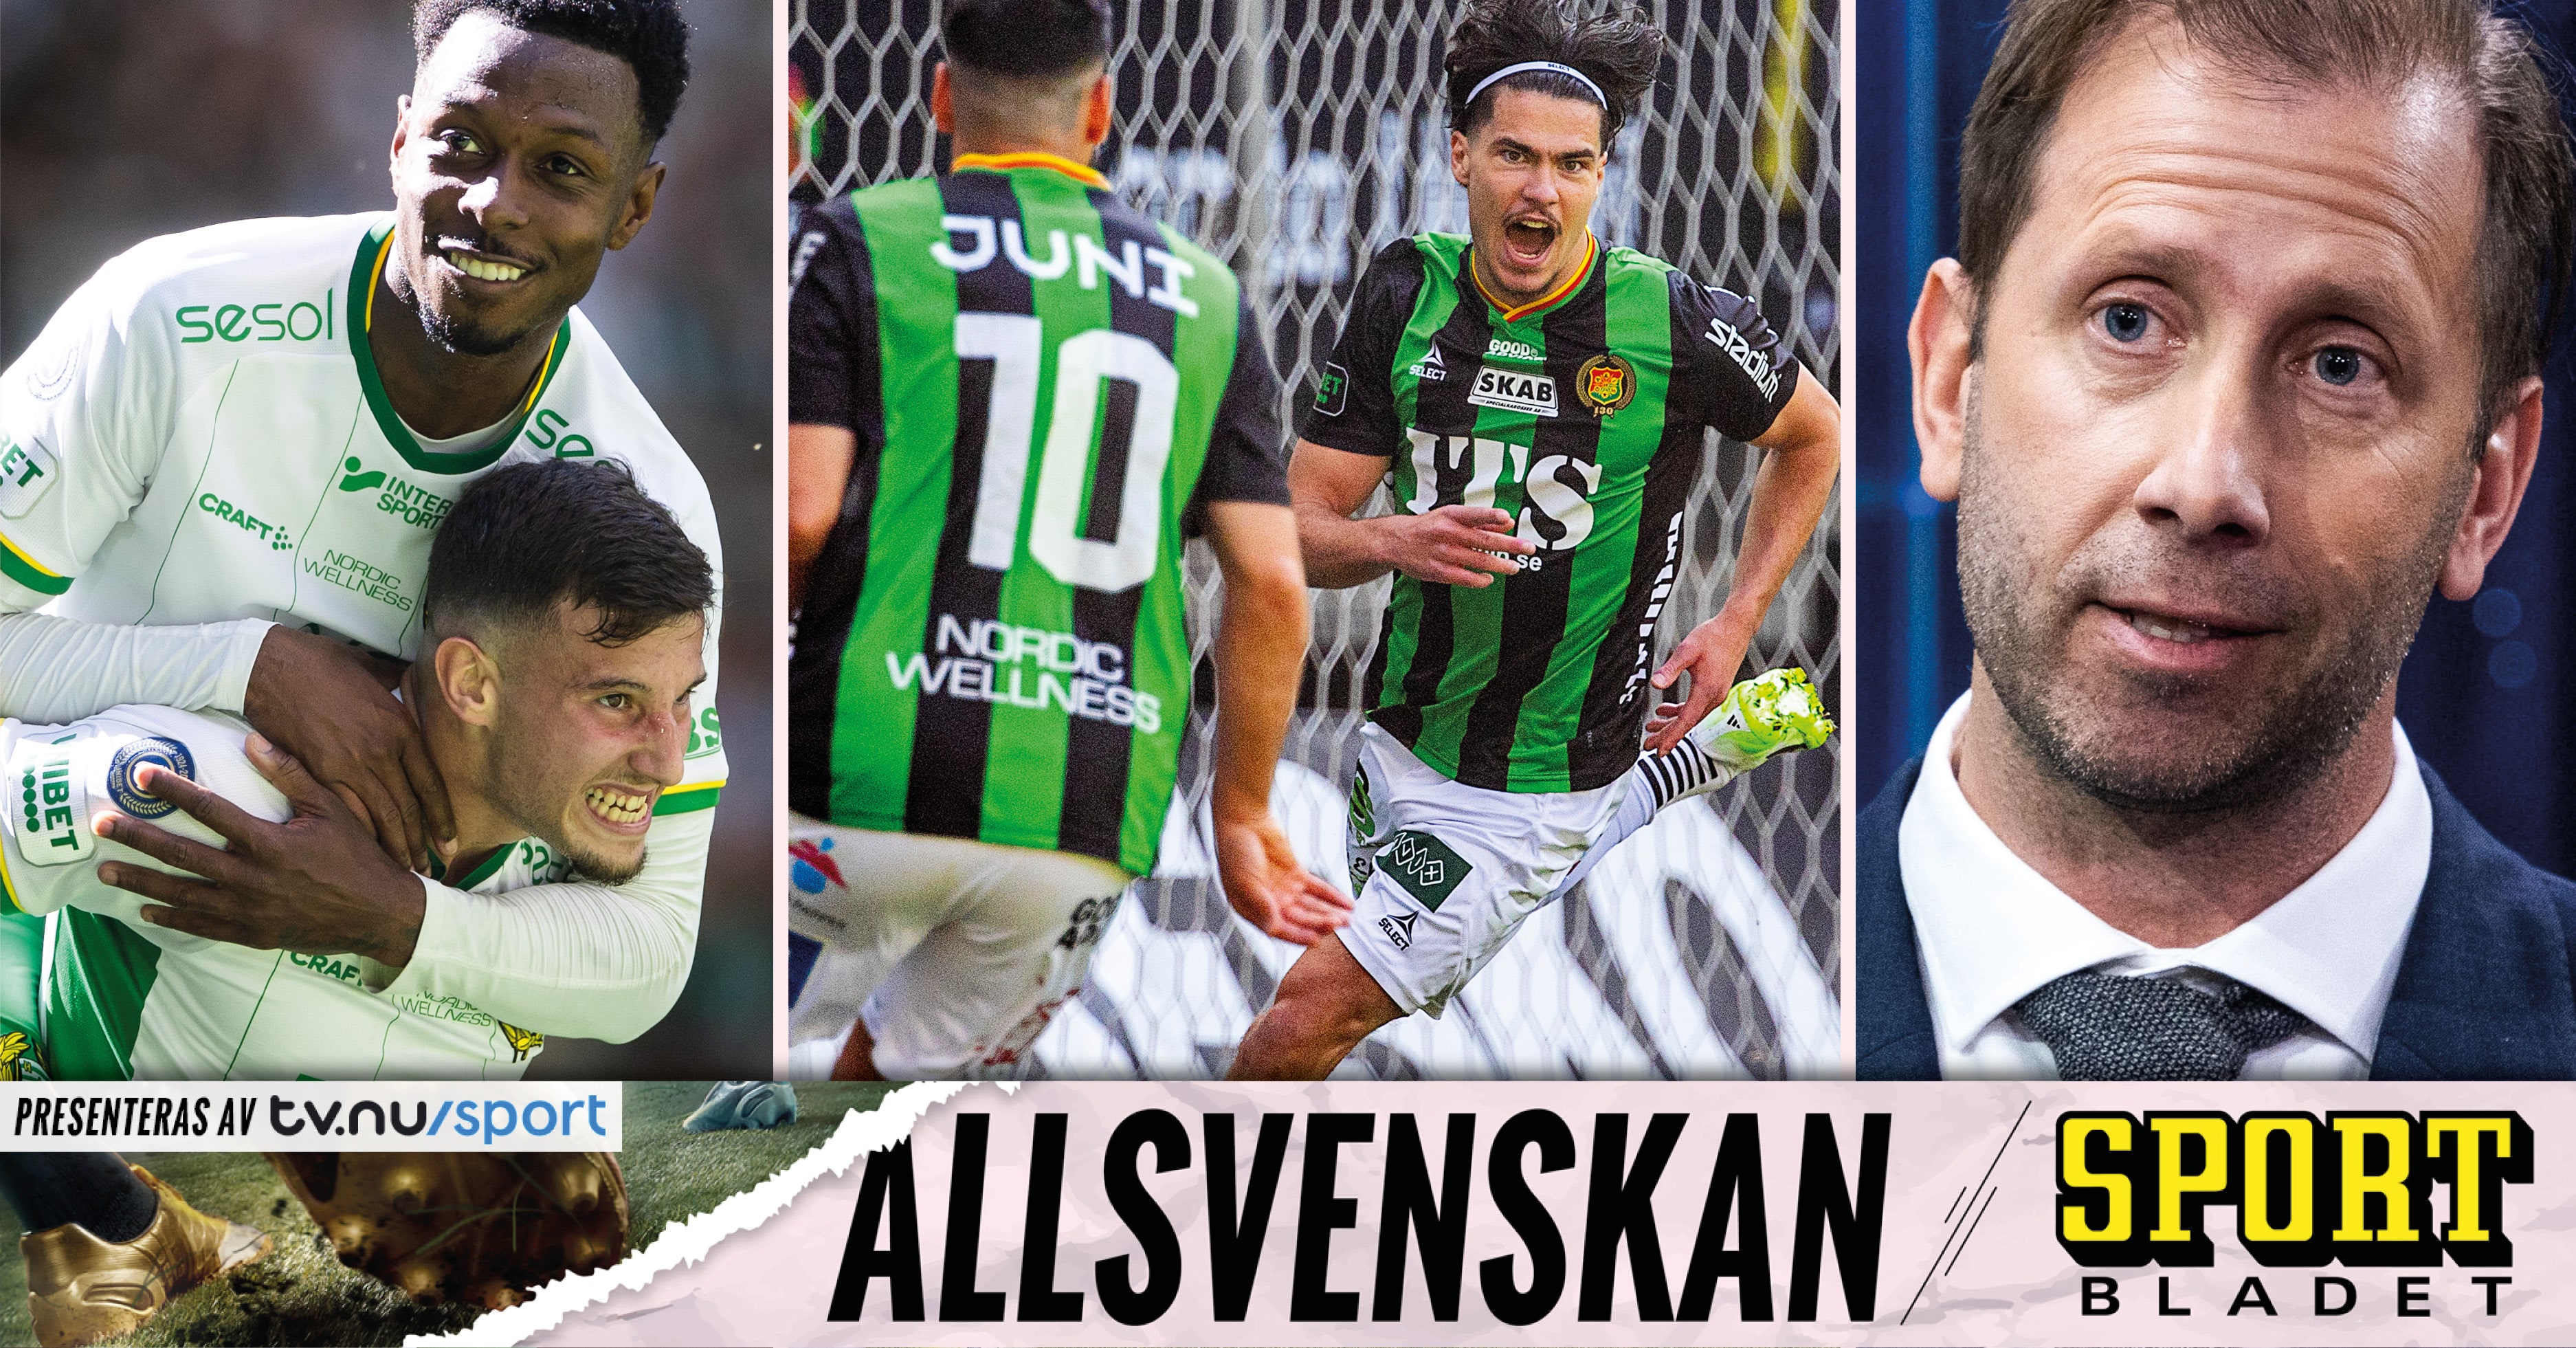 Allsvenskan: Sportbladet allsvenskan live med senaste nytt